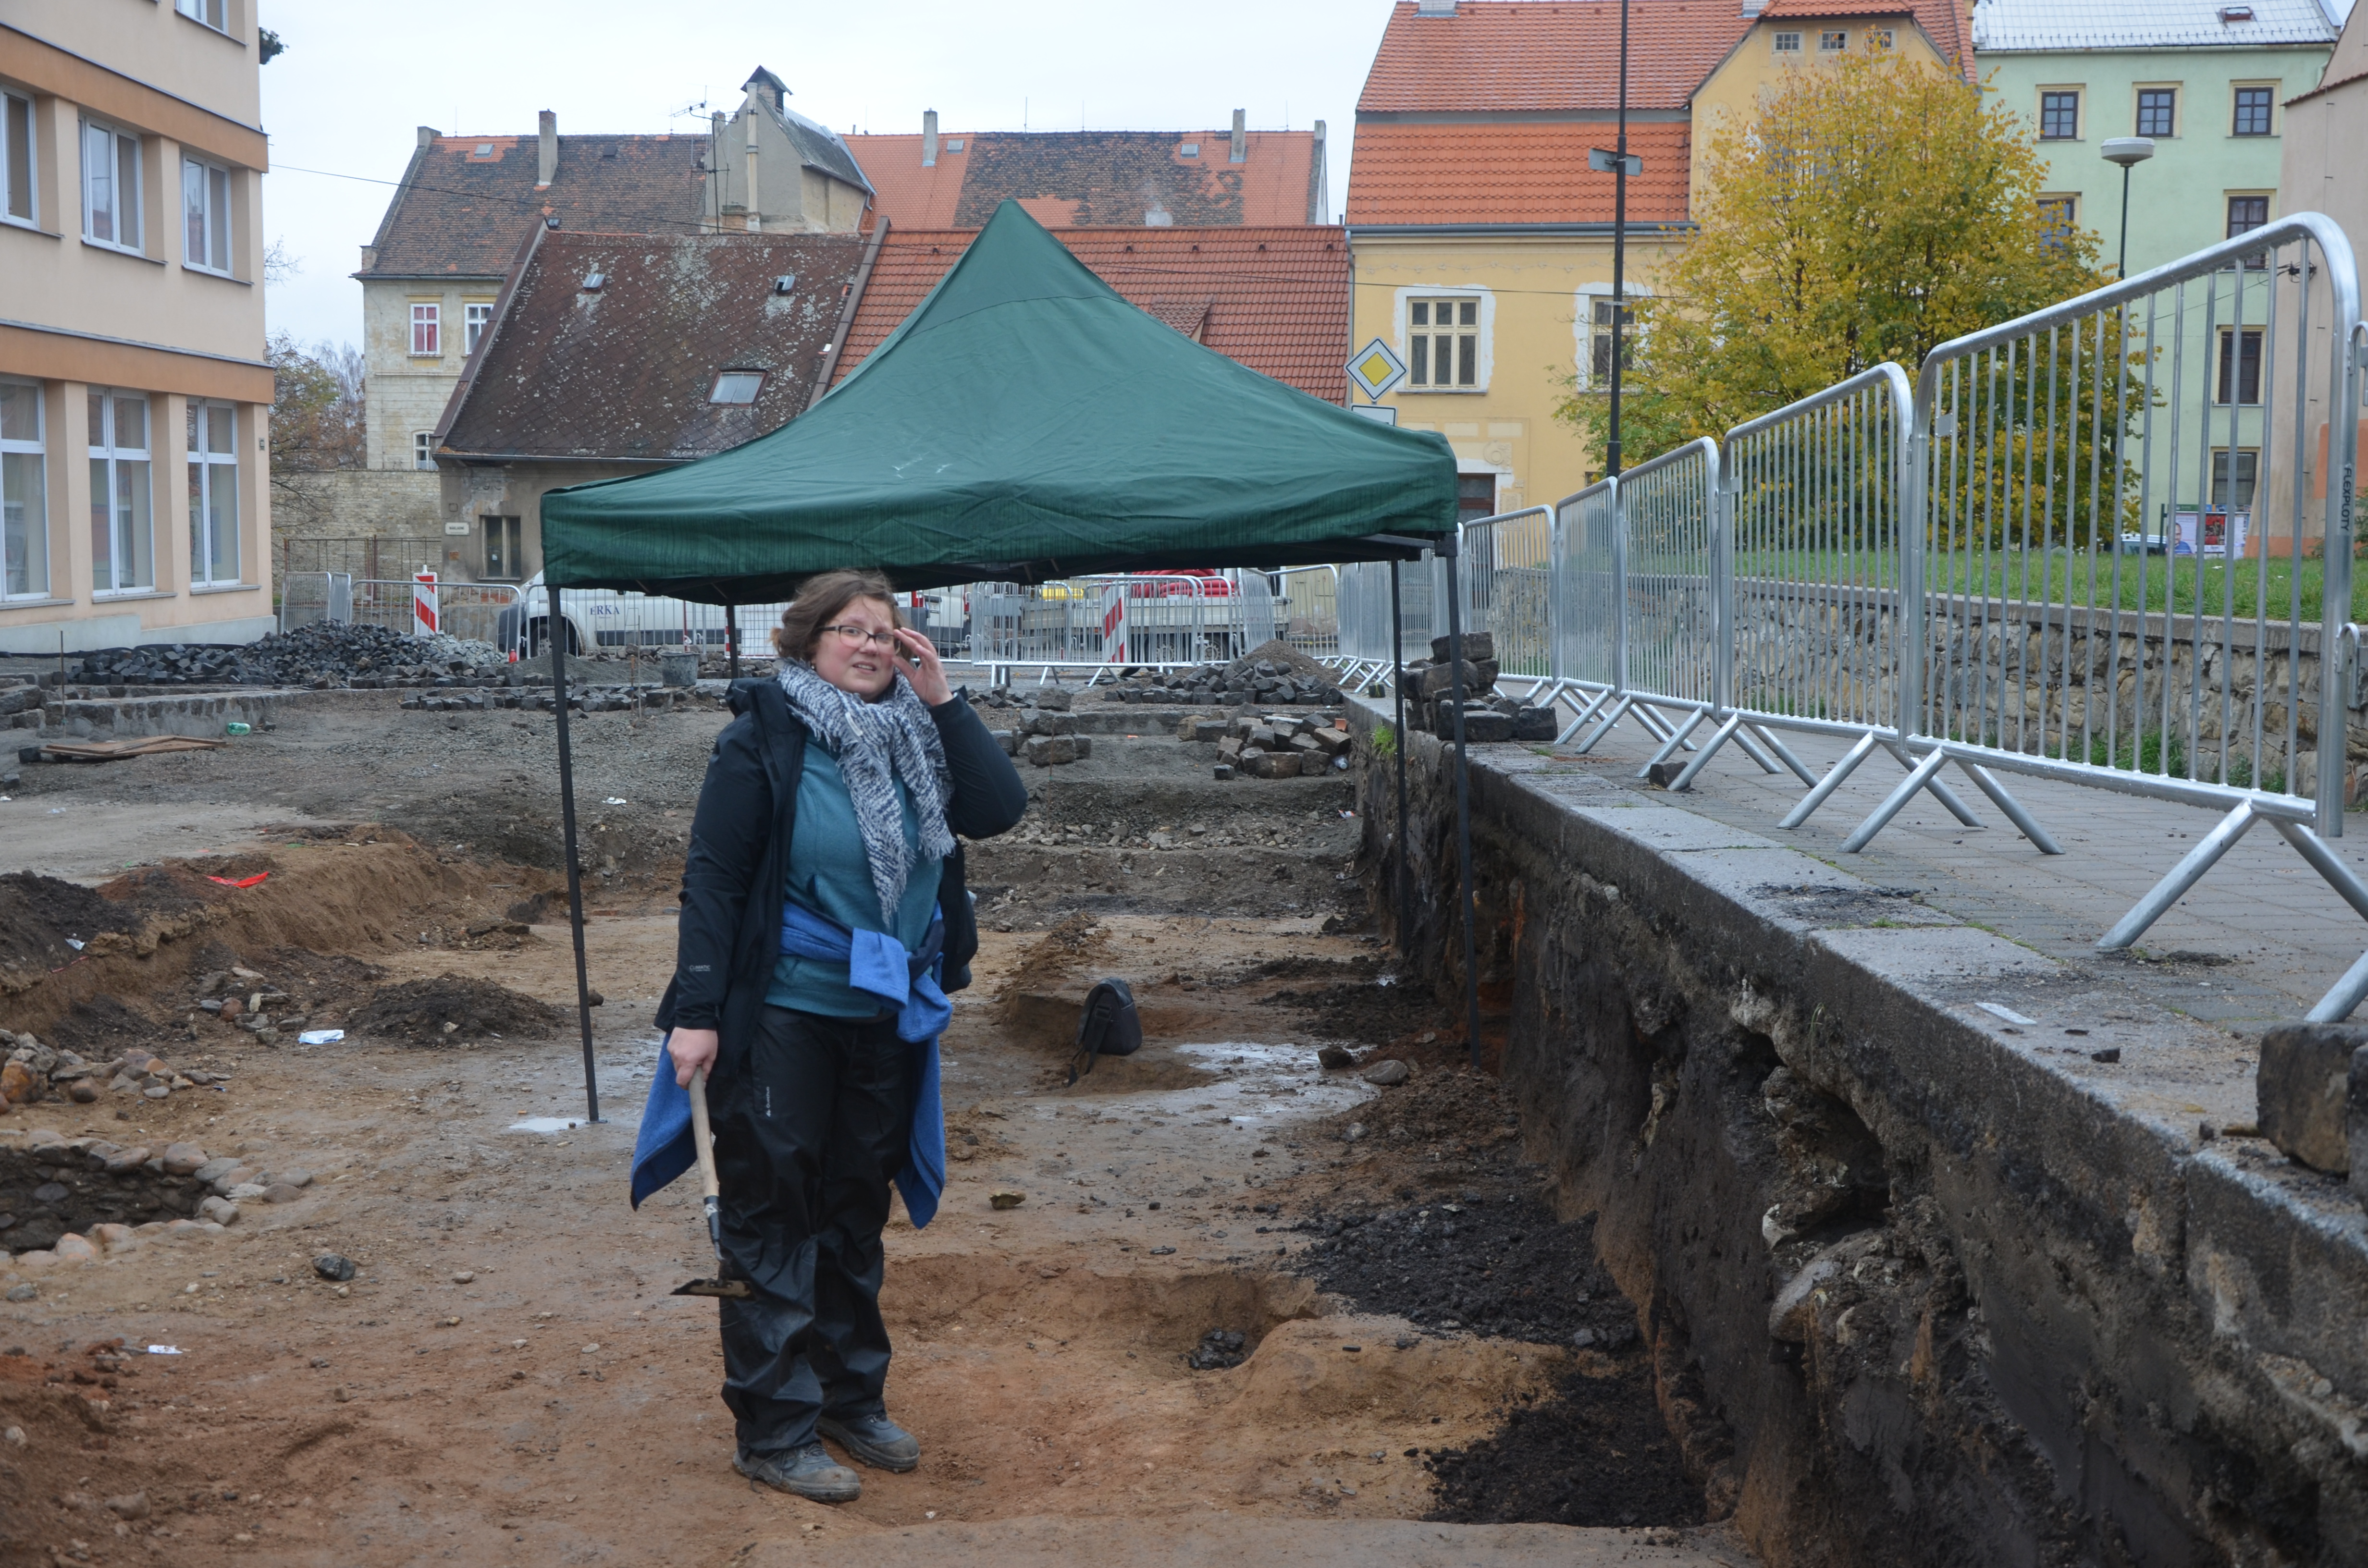 OBR. 1: Pohled na část výzkumu v ul. Karla IV. Středověké objekty chrání před deštěm provizorní přístřešek. Foto: P. Holodňák